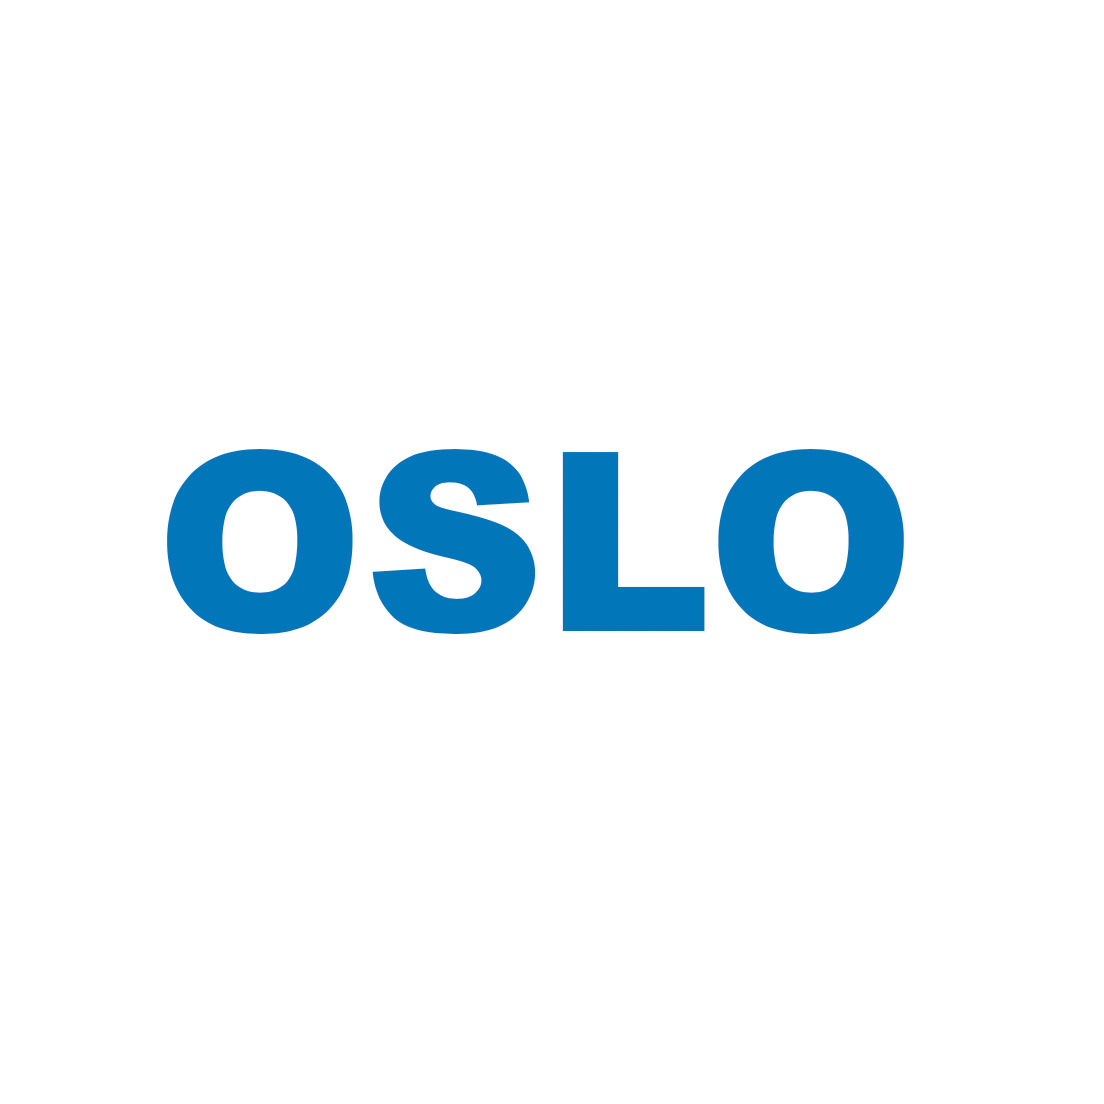 Oslo for VSCode